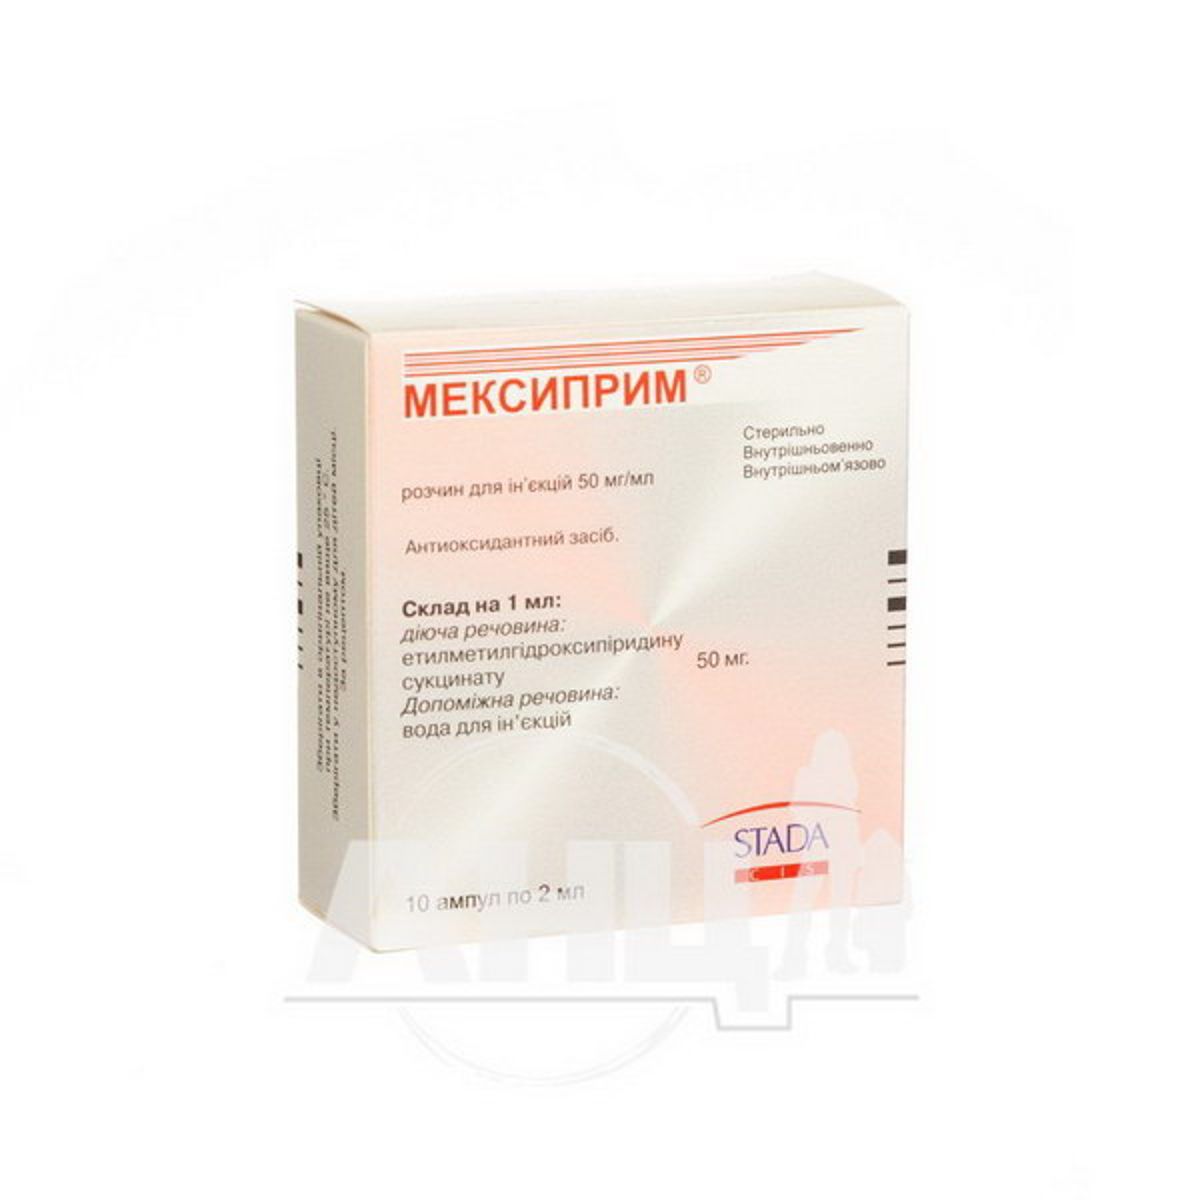 Армадин отзывы врачей и пациентов. Mexiprim 2мл - 10 ампул. Мексиприм в ампулах 2 мл. Мексиприм раствор для инъекций аналоги. Mexiprimi уколы 2,0.